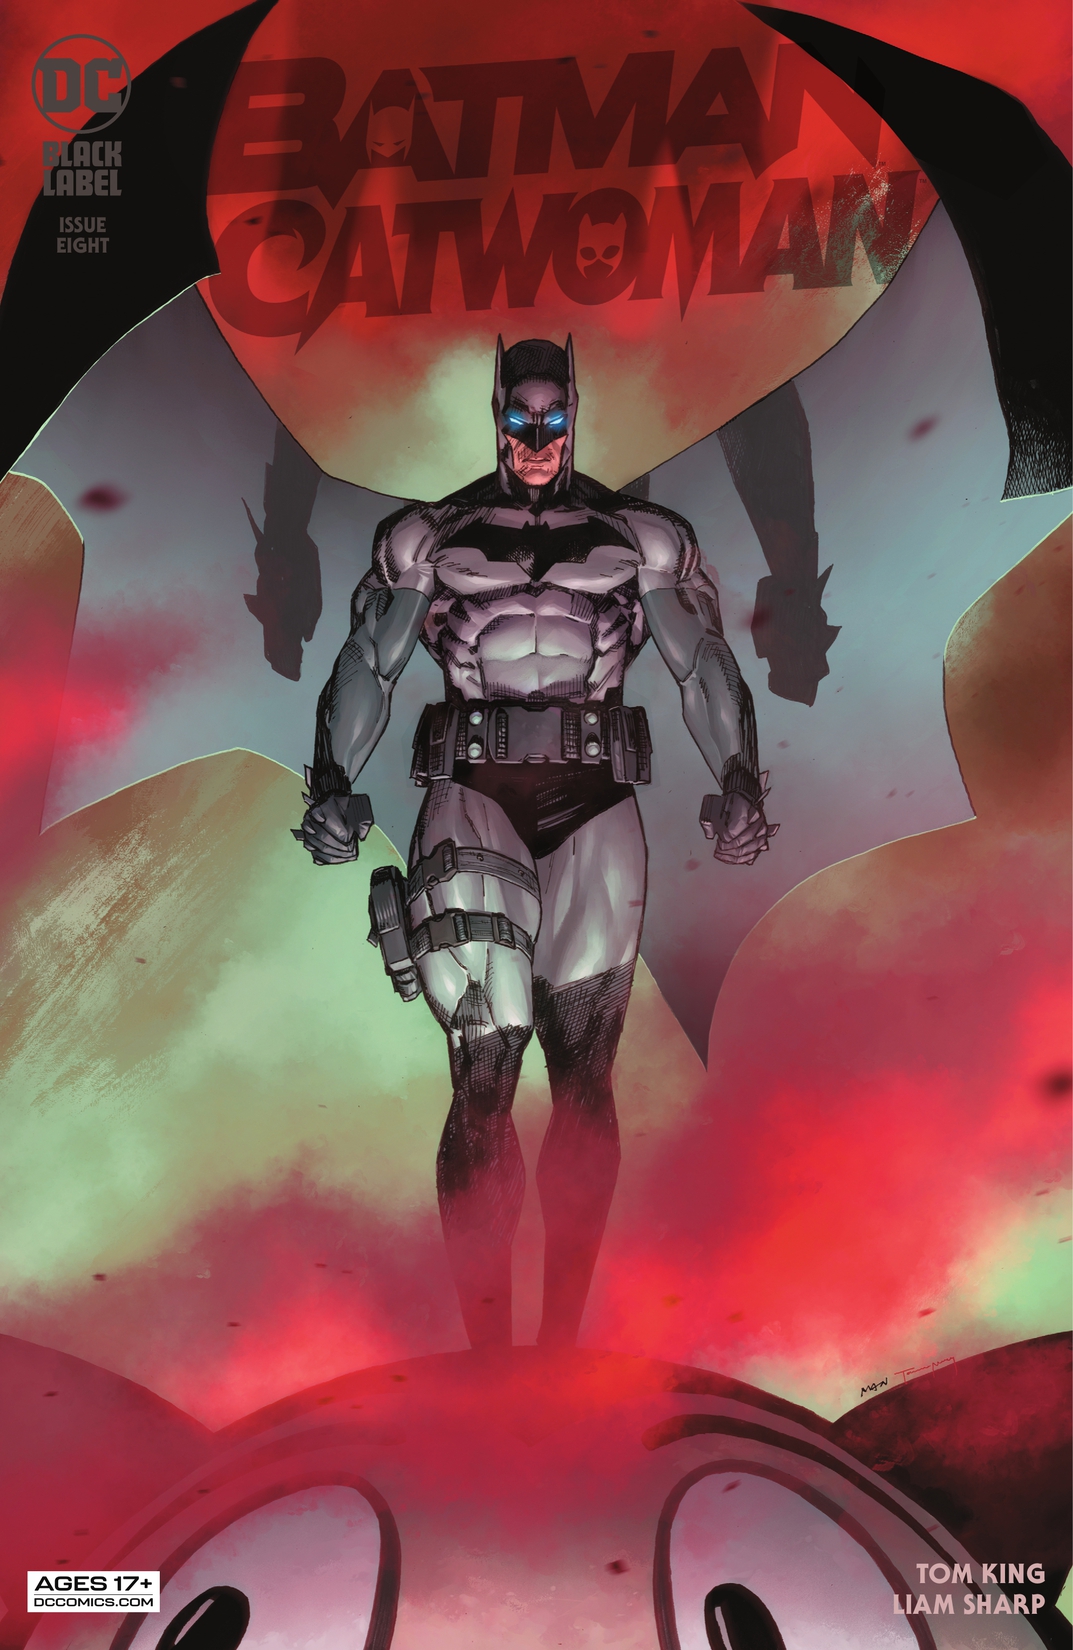 Batman/Catwoman #8 preview images